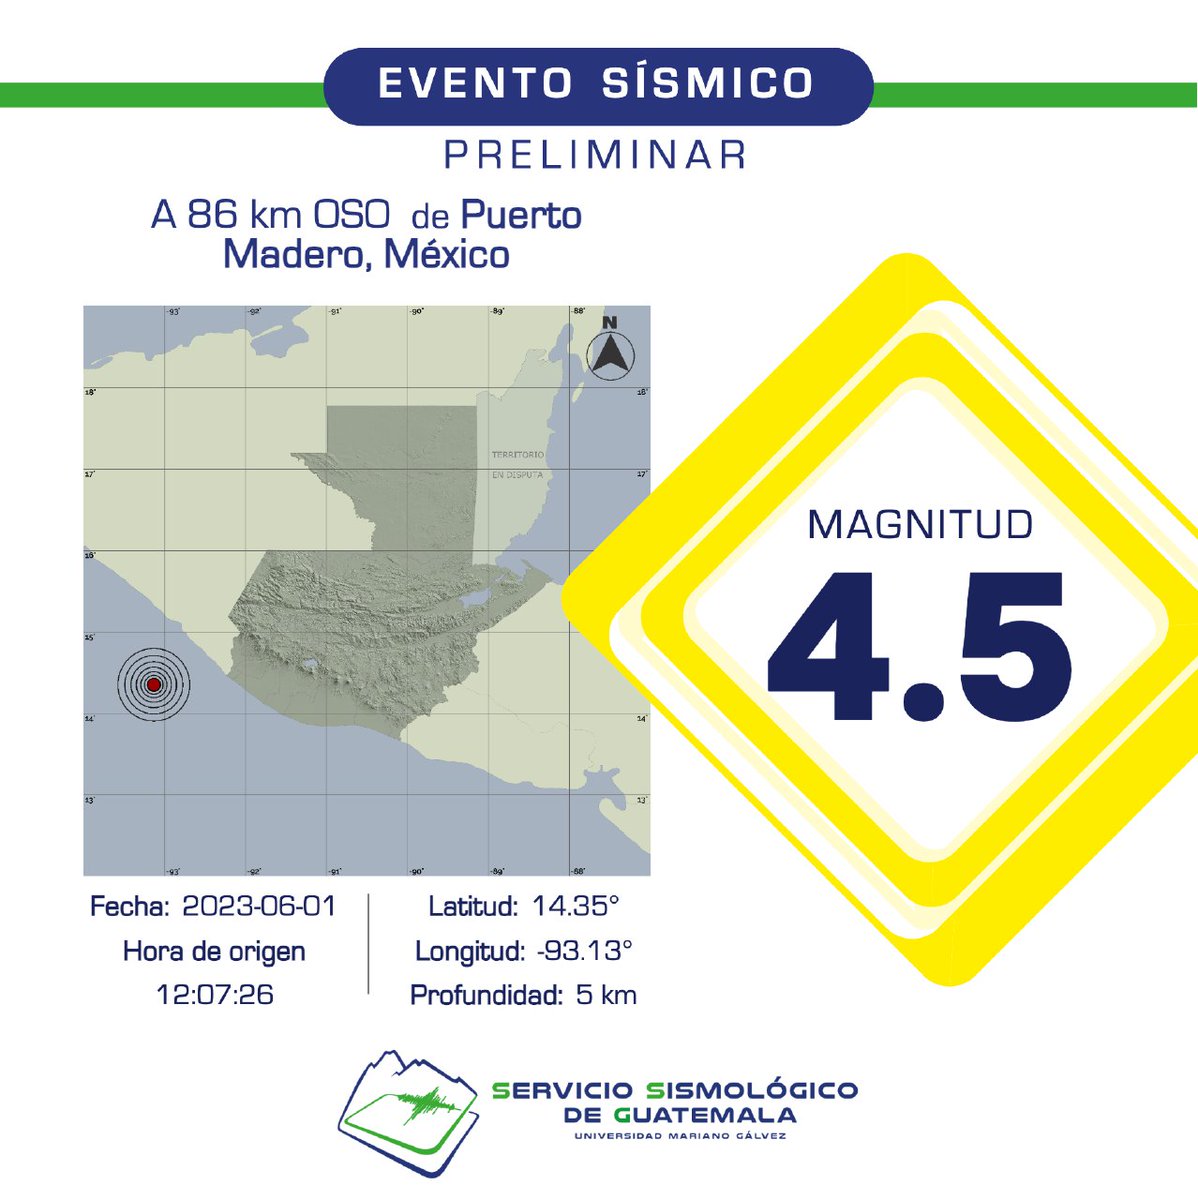 PRELIMINAR
Sismo registrado a 86 km OSO de Puerto Madero, México. #Temblor #TemblorGT #Sismo #SismoGT